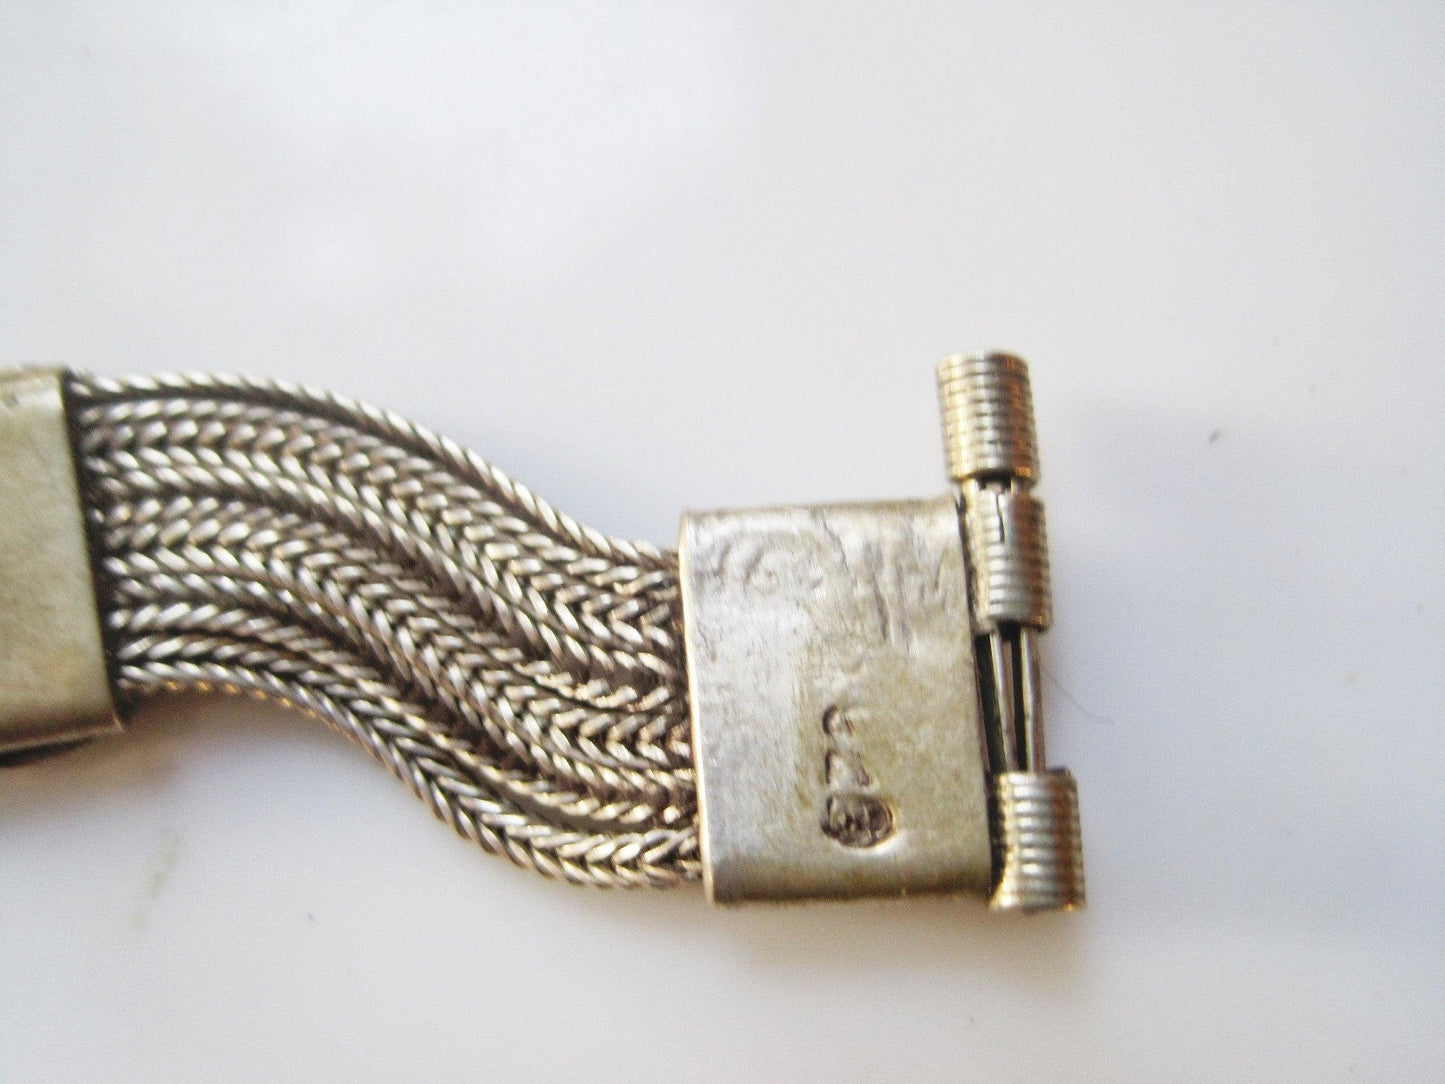 Vintage Silver and Niello Turkish Bracelet - Anteeka